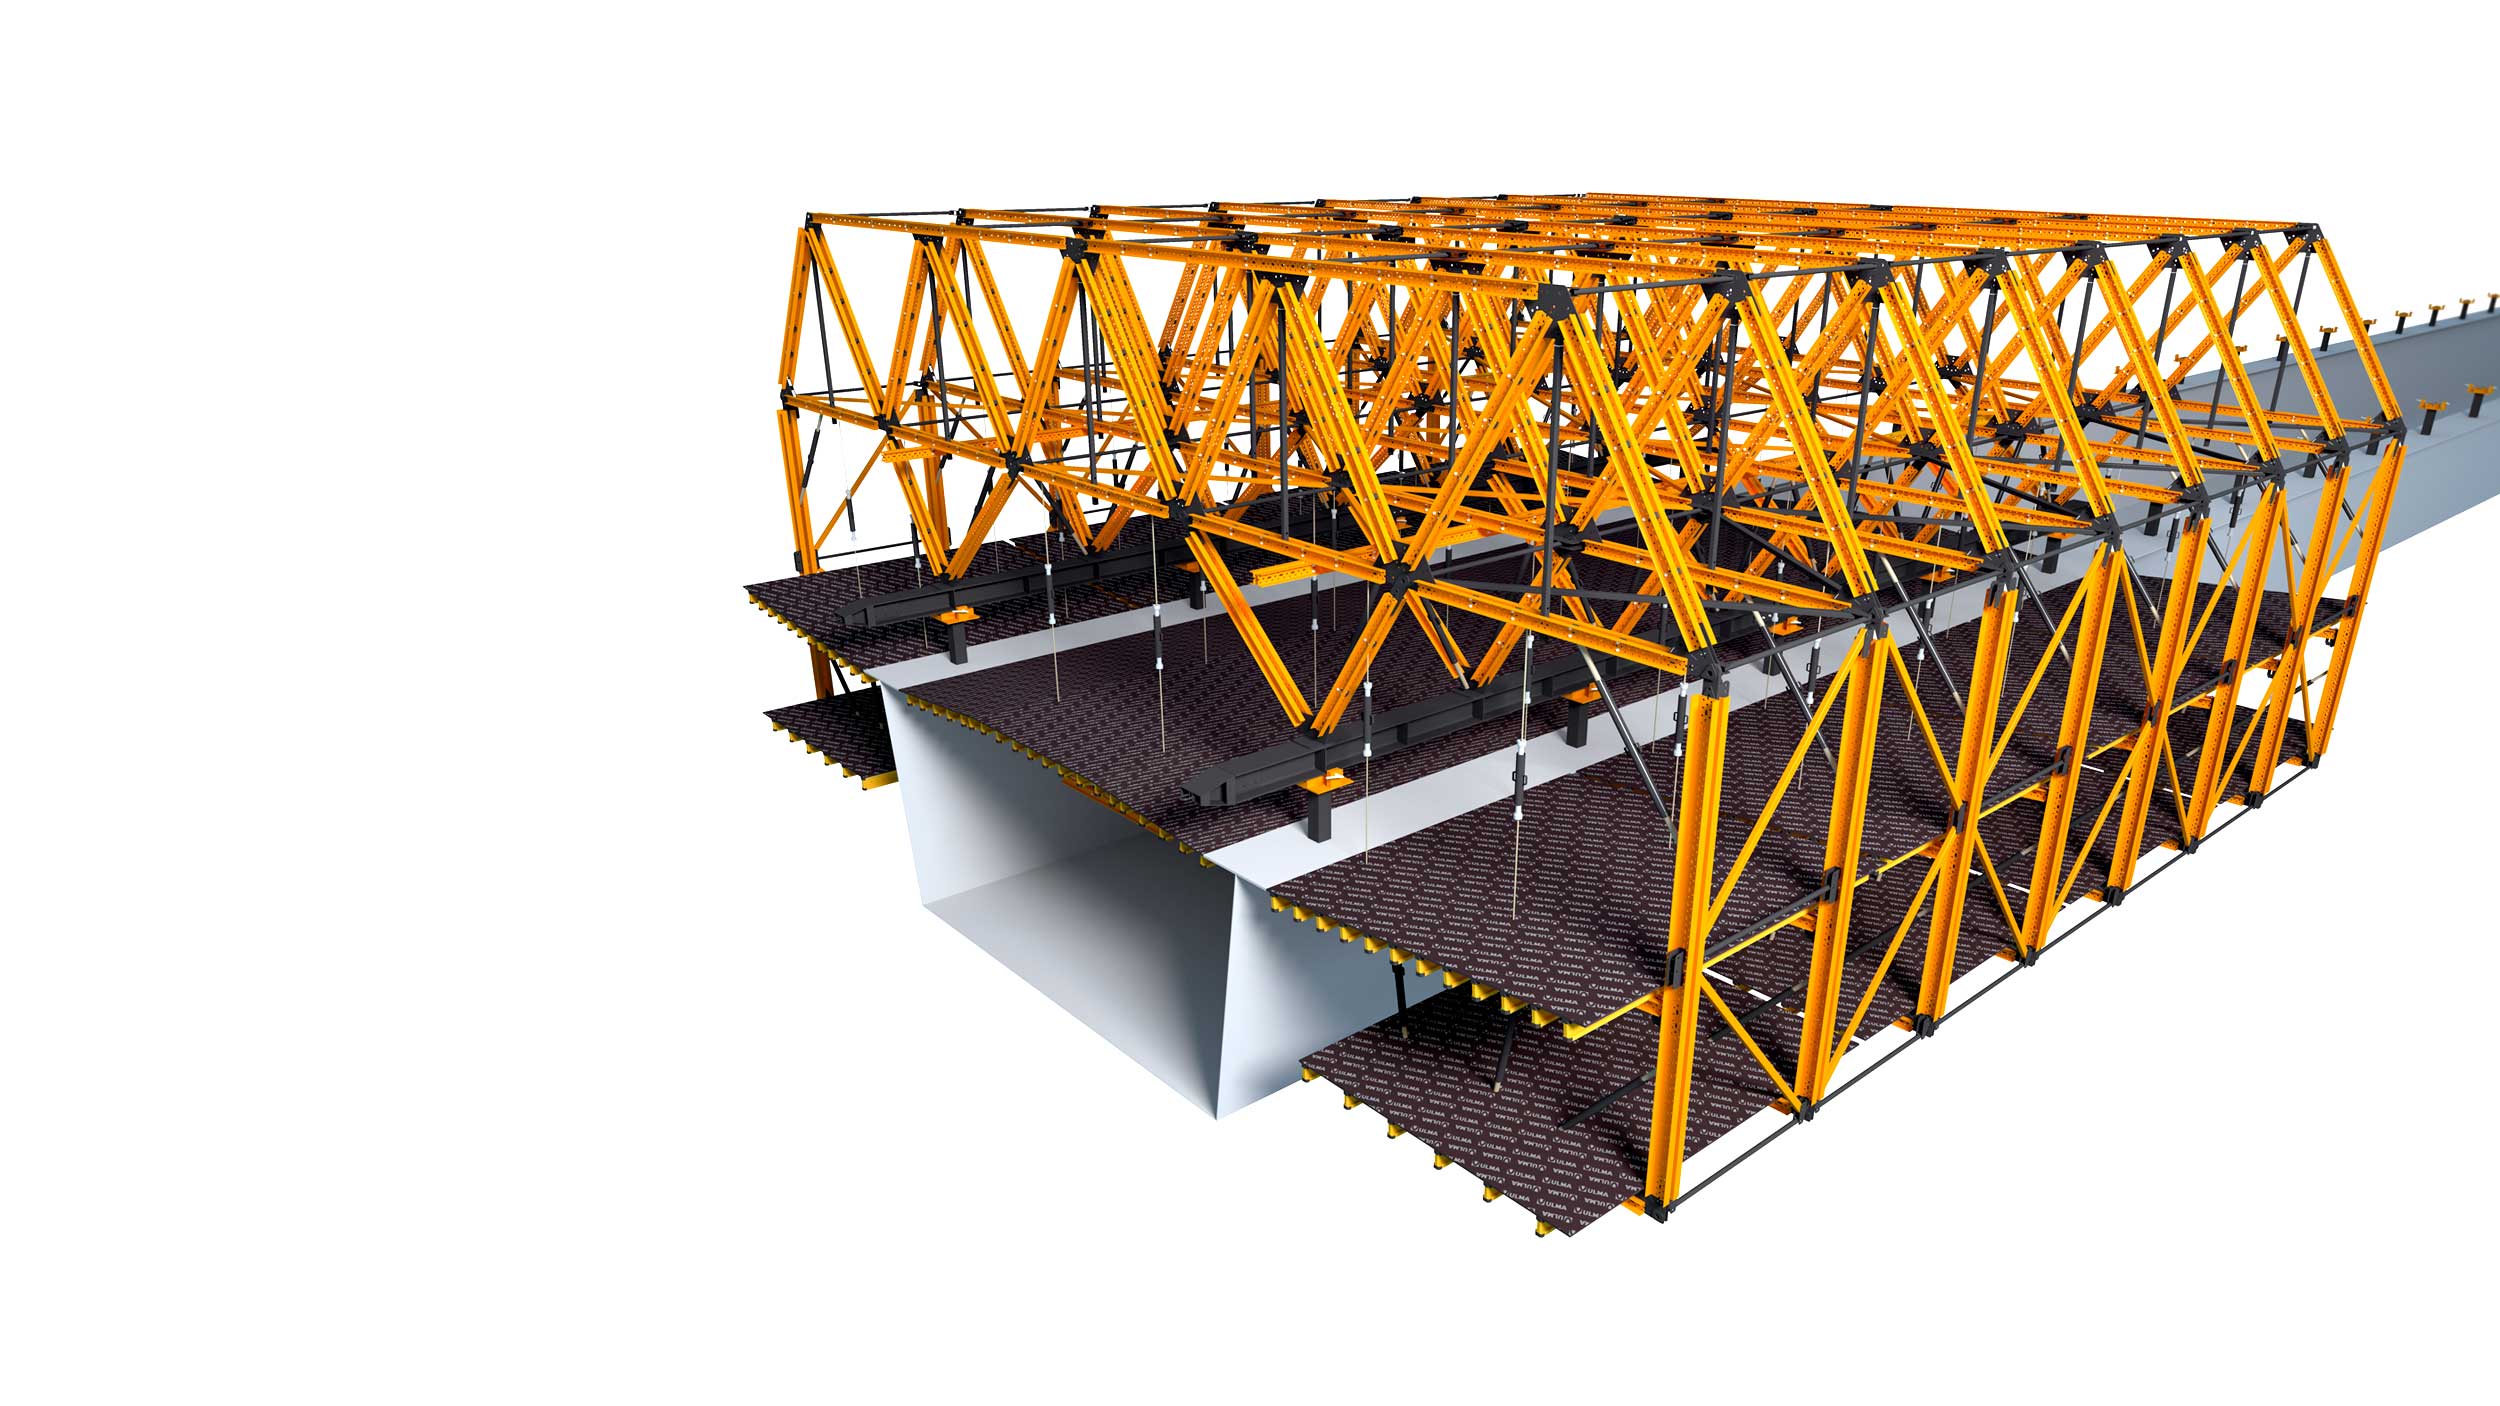 Konzolové bednění pro ocelové kompozitní mosty a částečně prefabrikované betonové mosty. Výhody: Konfigurovatelné pro každý project zvlášť. Umožňuje rychlé pracovní cykly.